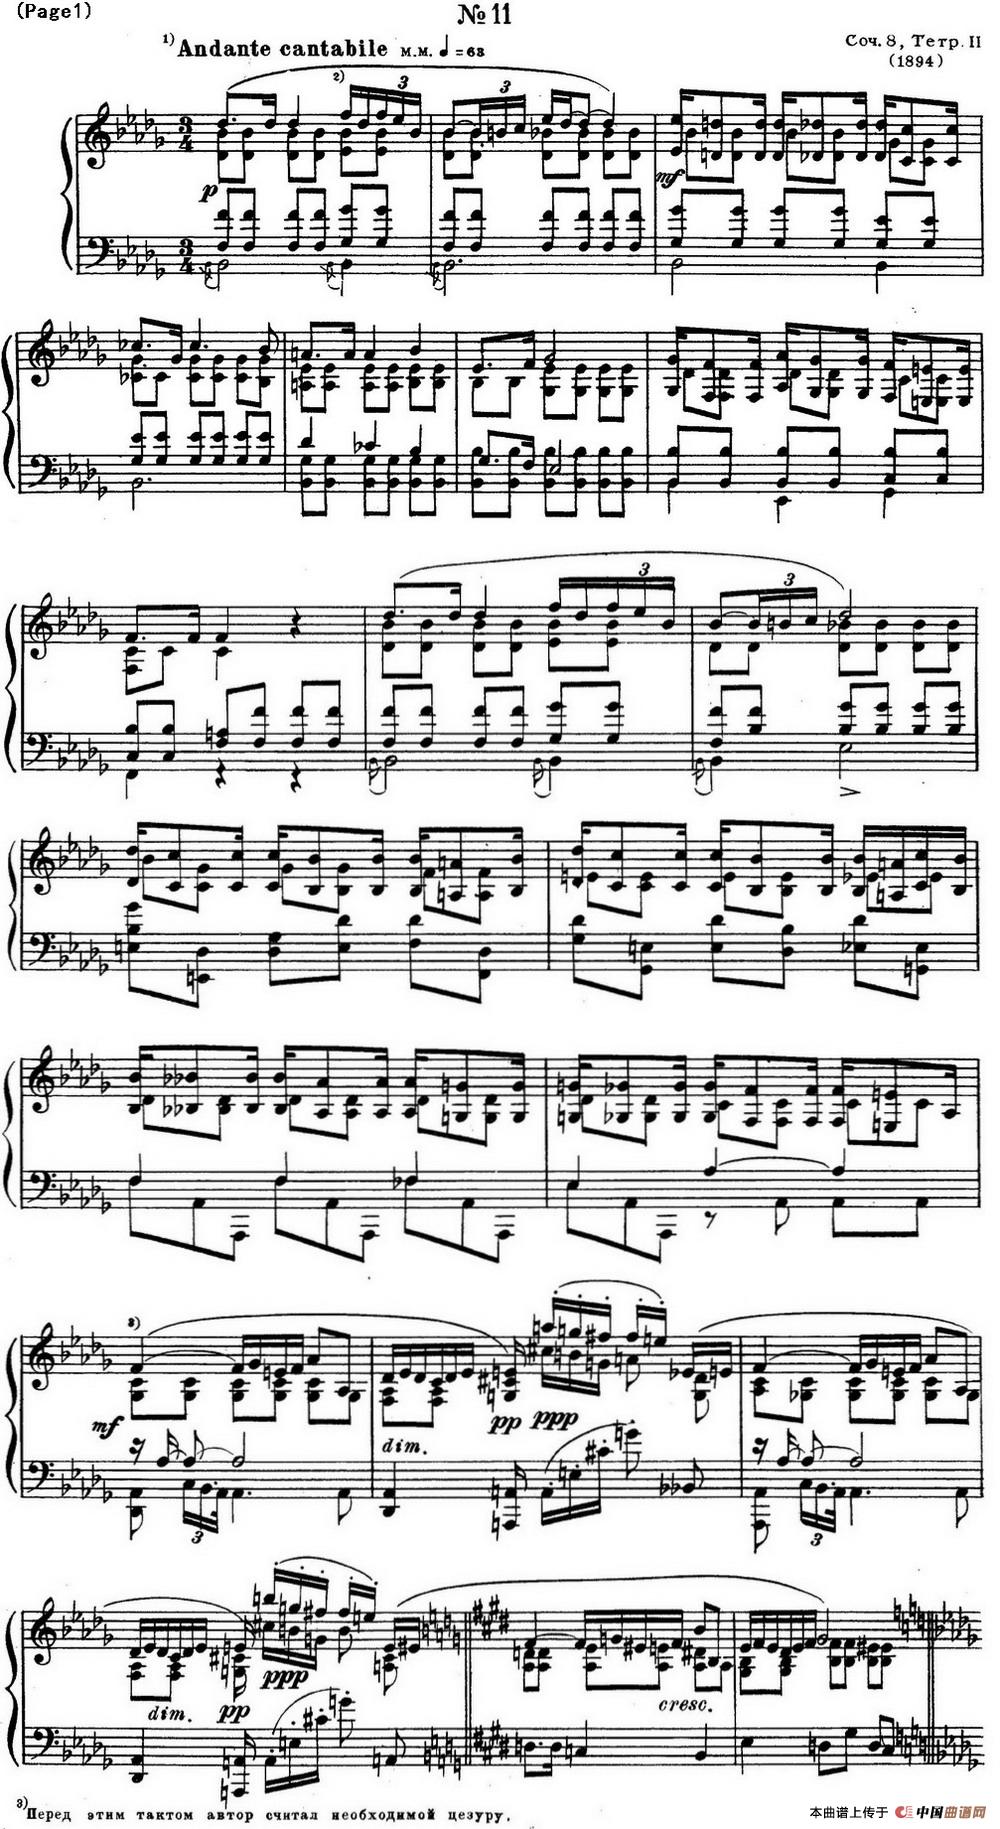 斯克里亚宾12首钢琴练习曲 Op8（No.11 Alexander Scriabin Etudes）(1)_Scriabin Etude Op.8 No.11_页面_2.jpg